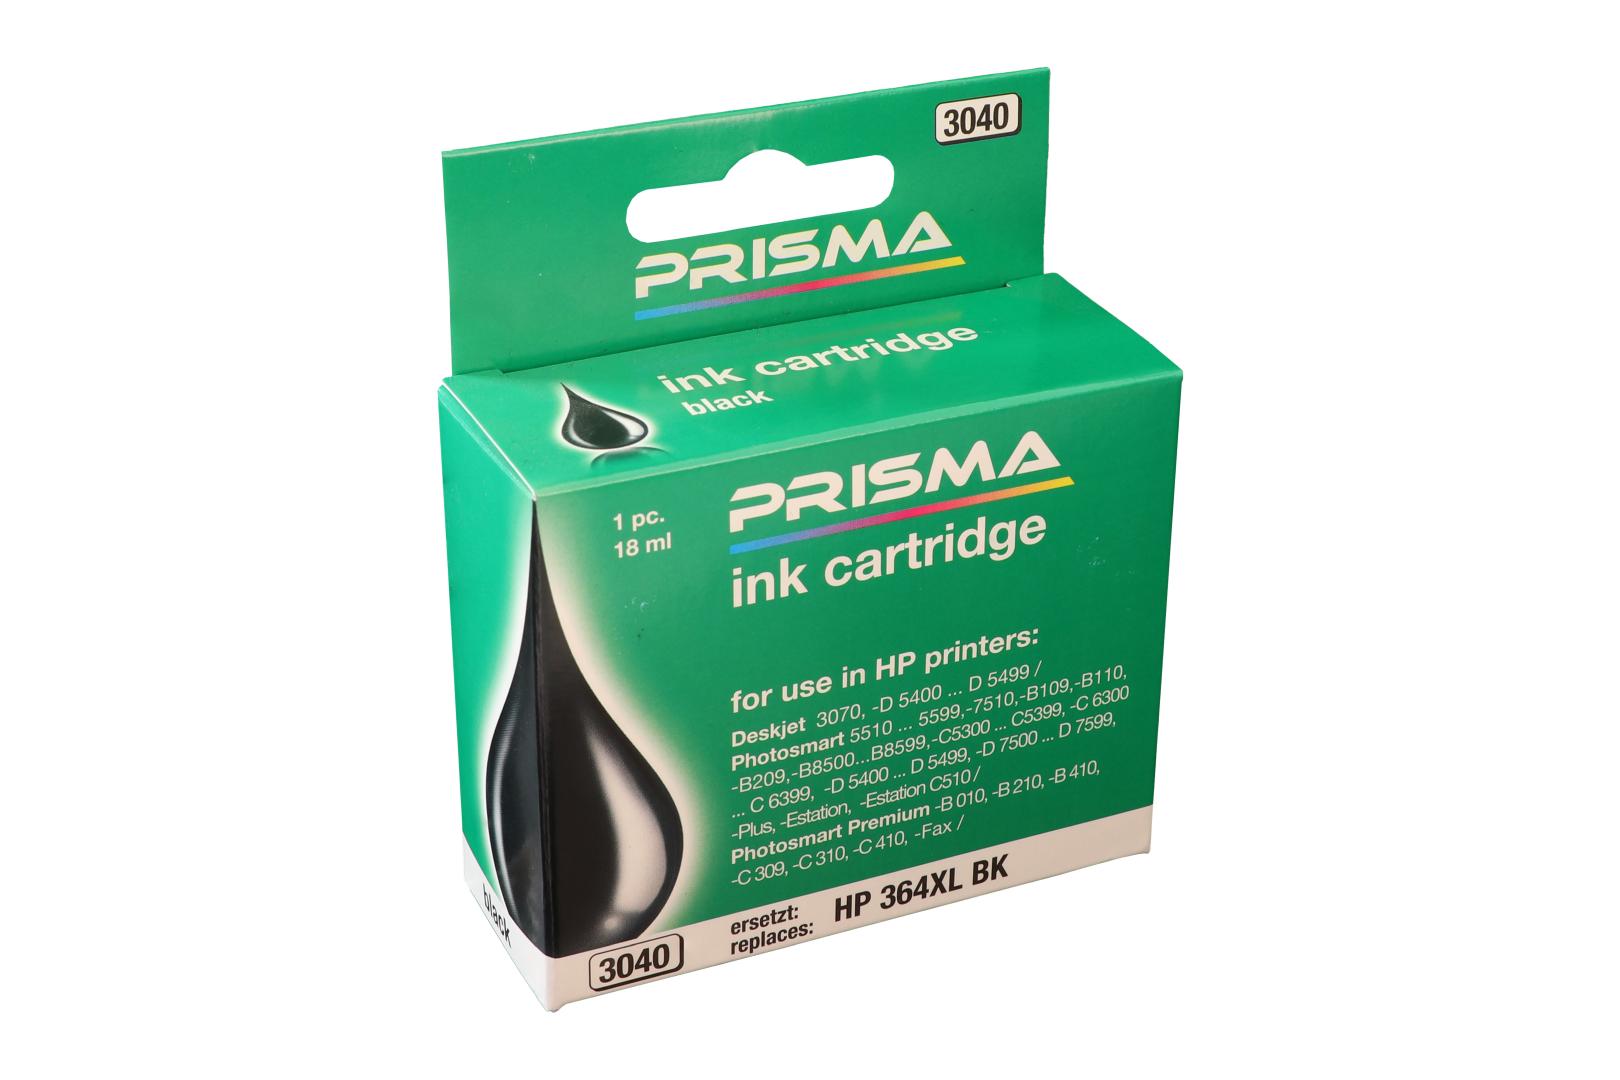 PRISMA 3040 Druckerpatrone für HP Tintenstrahldrucker, schwarz, 18 ml